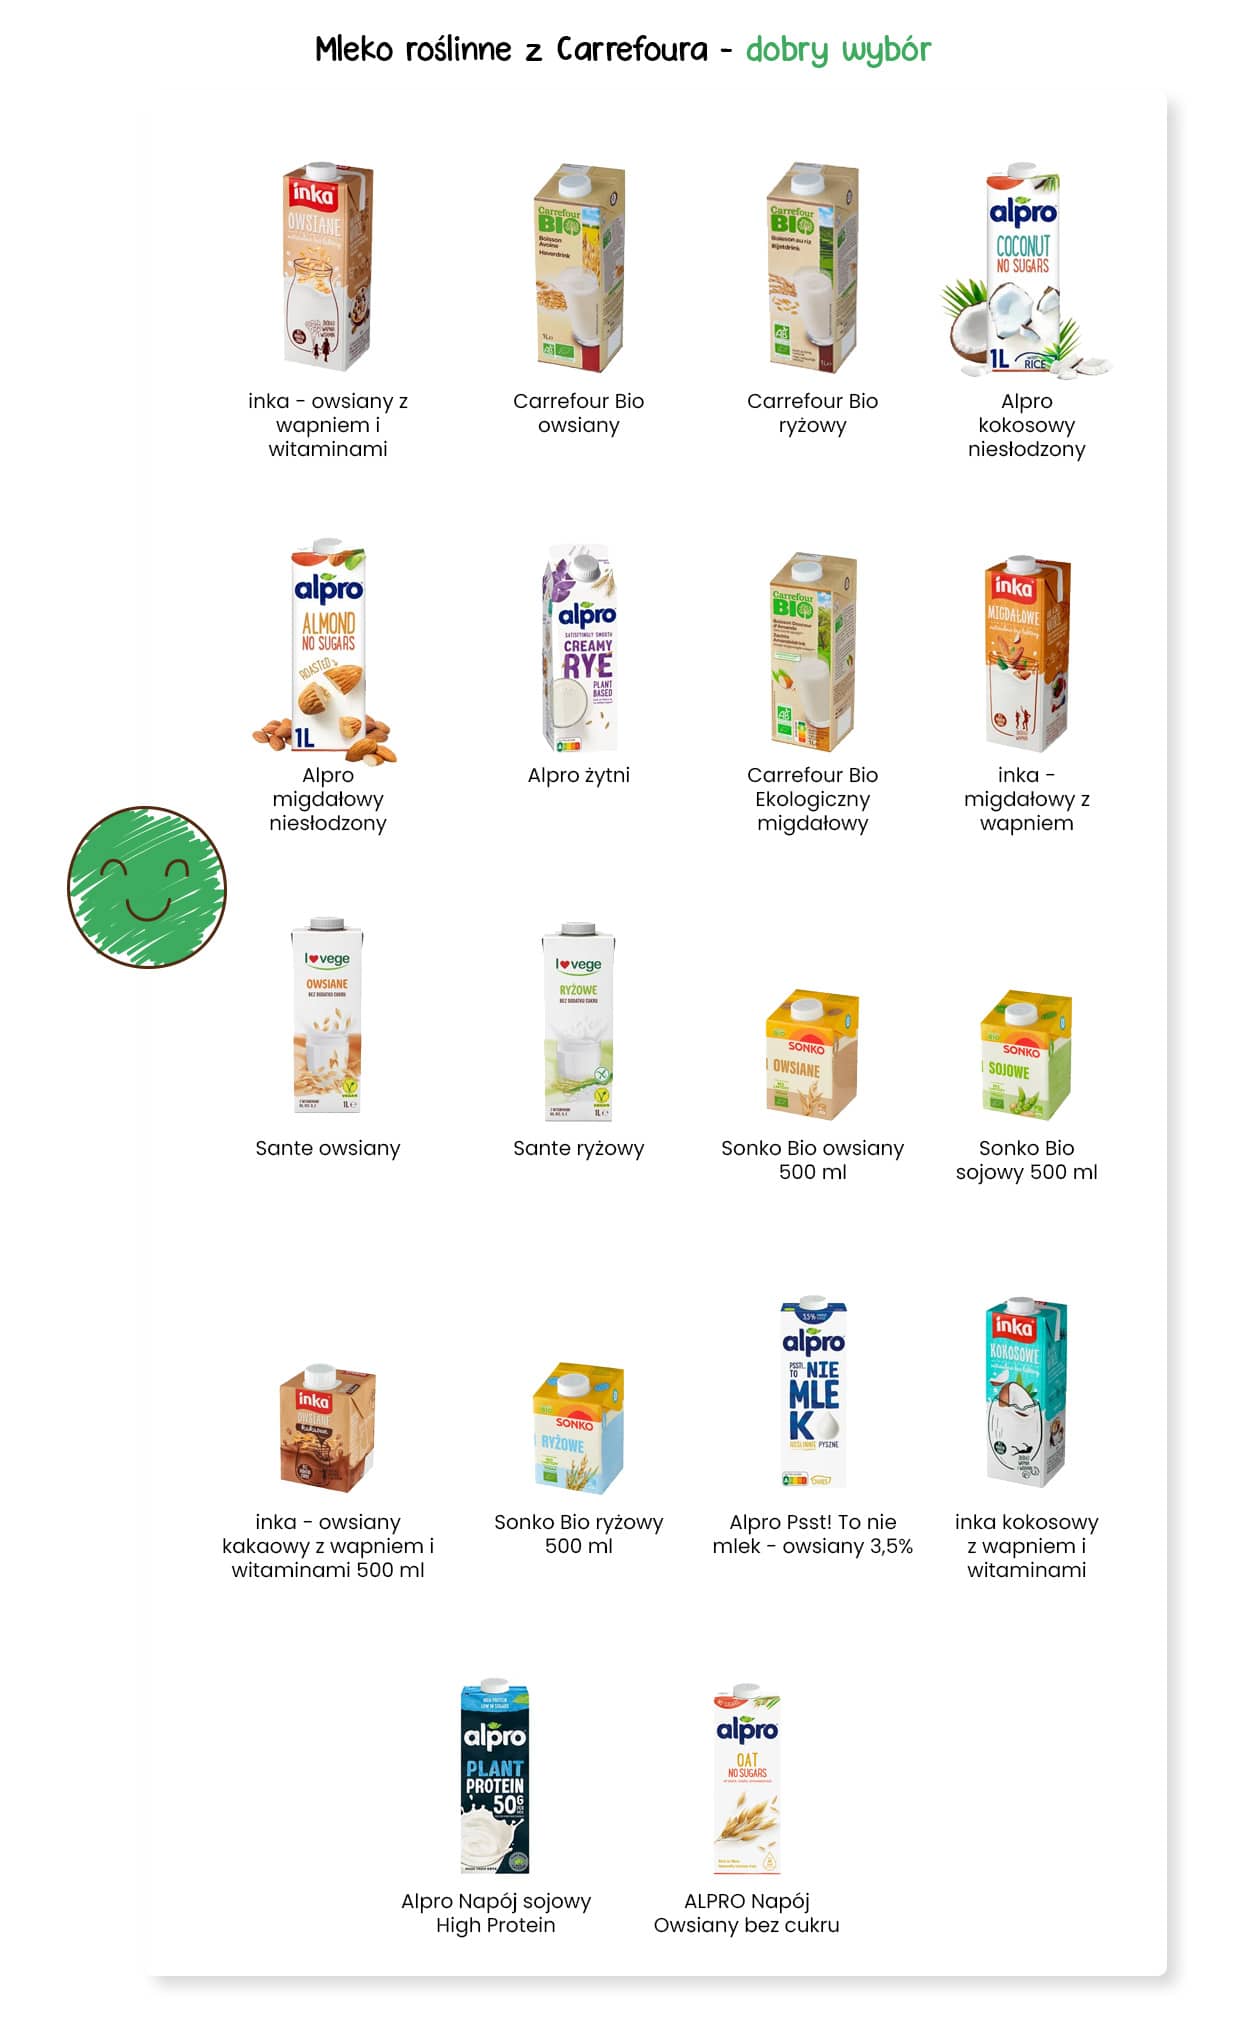 Mleko roślinne Carrefour - dobry wybór